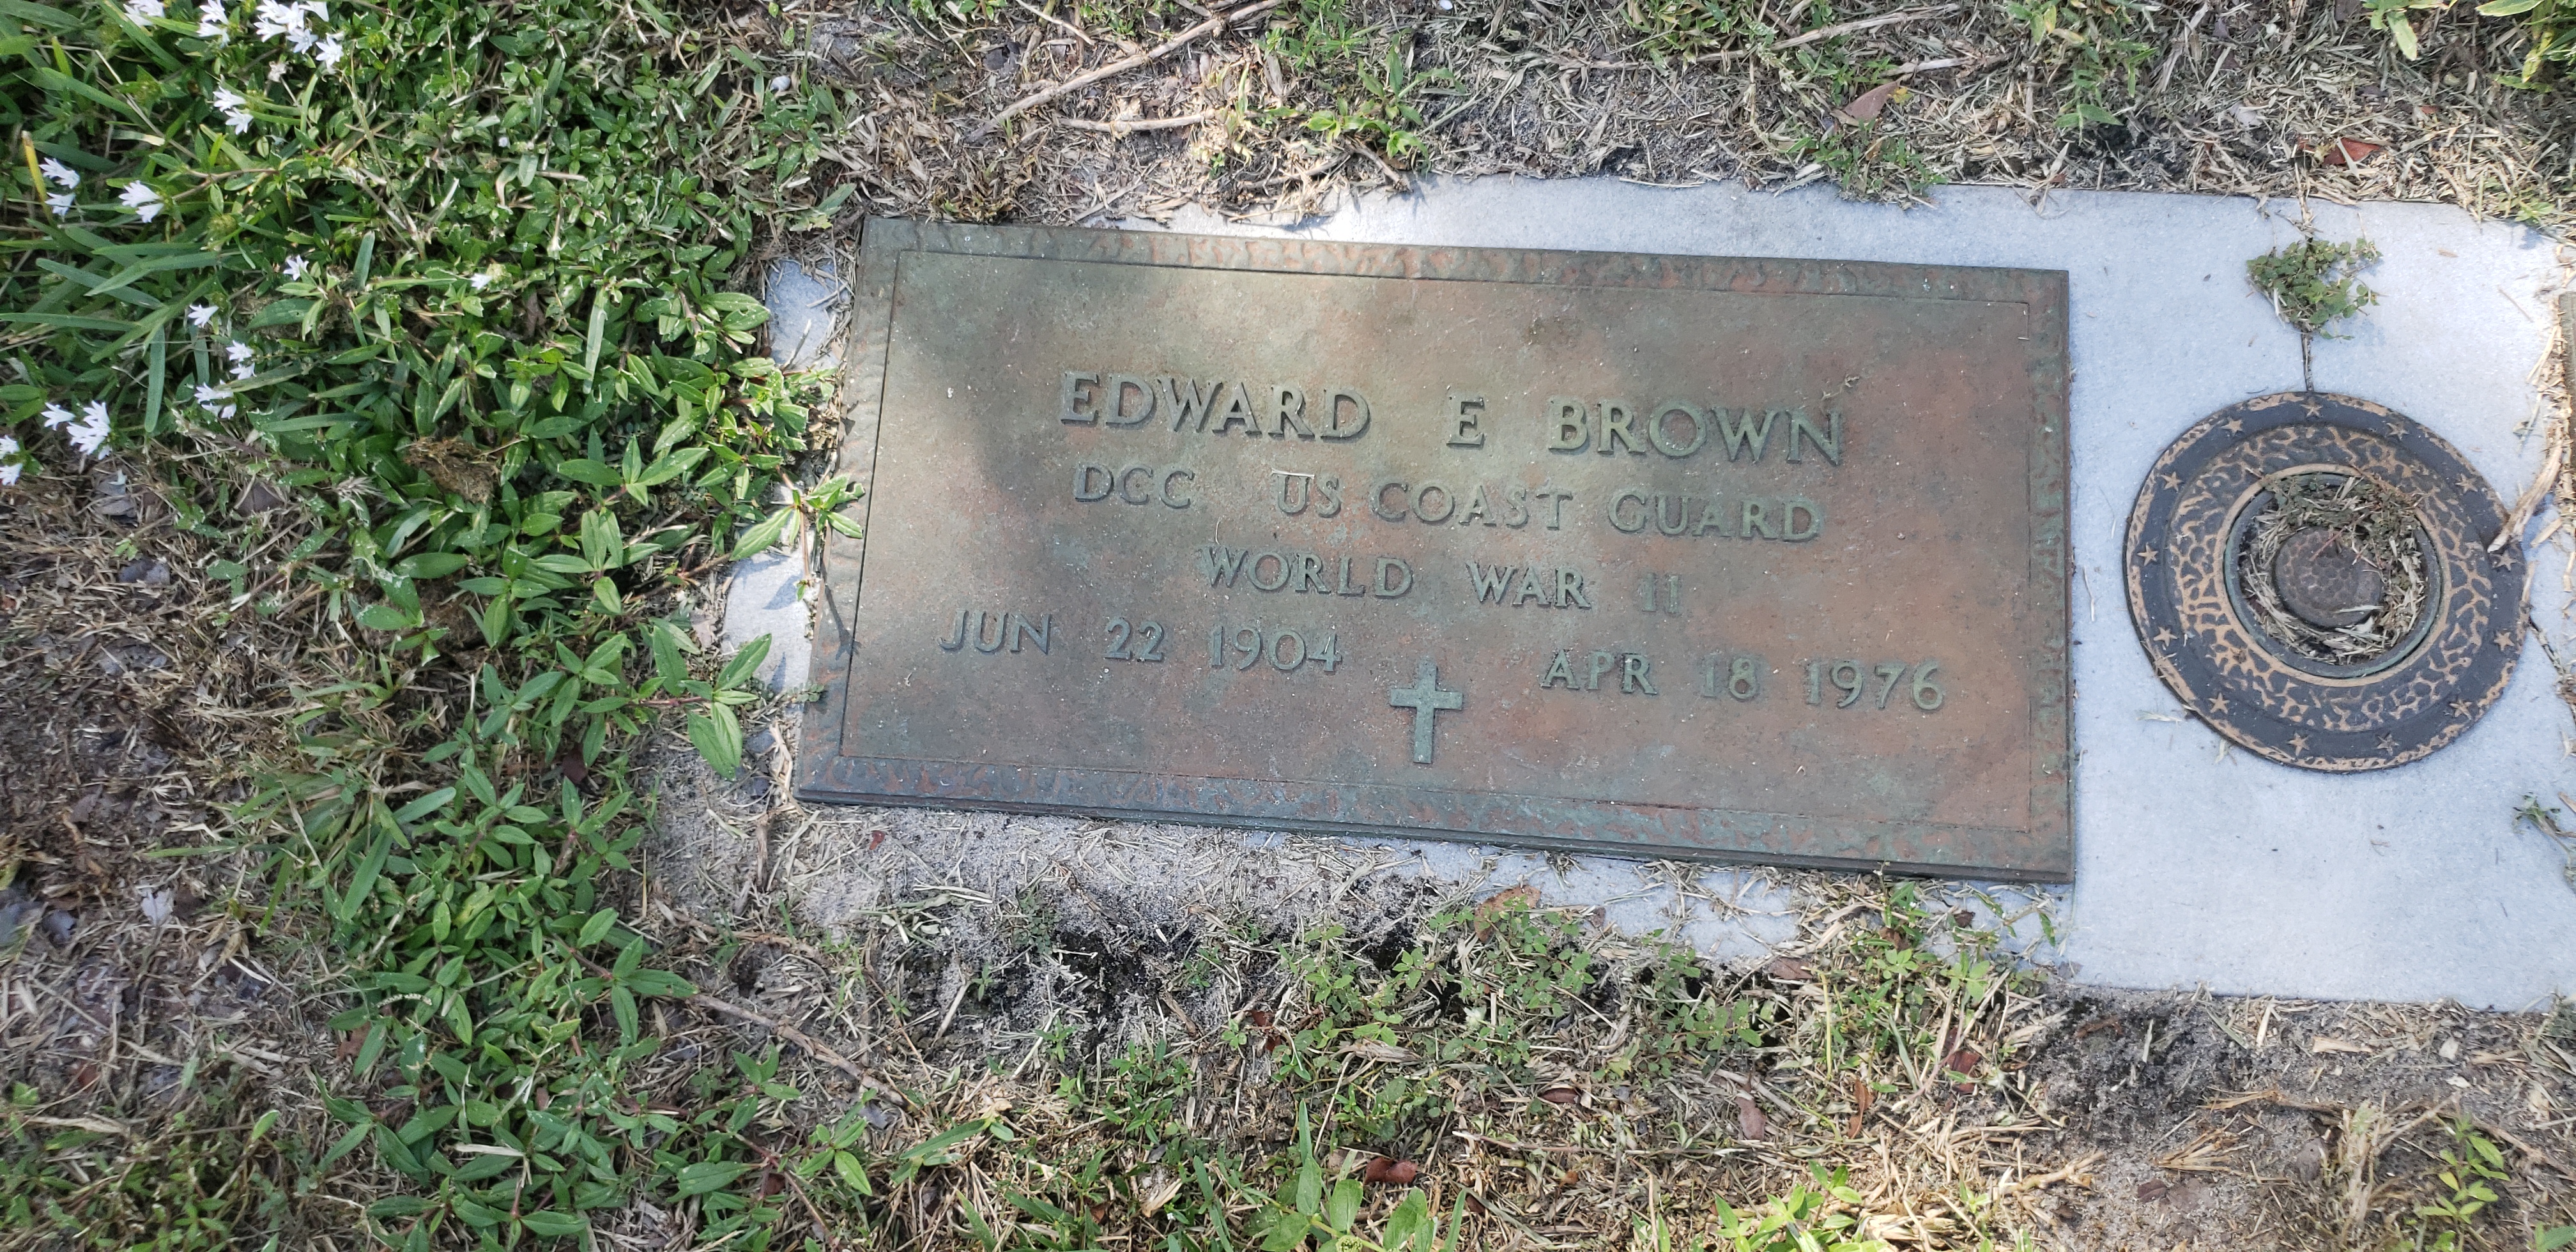 Edward E Brown